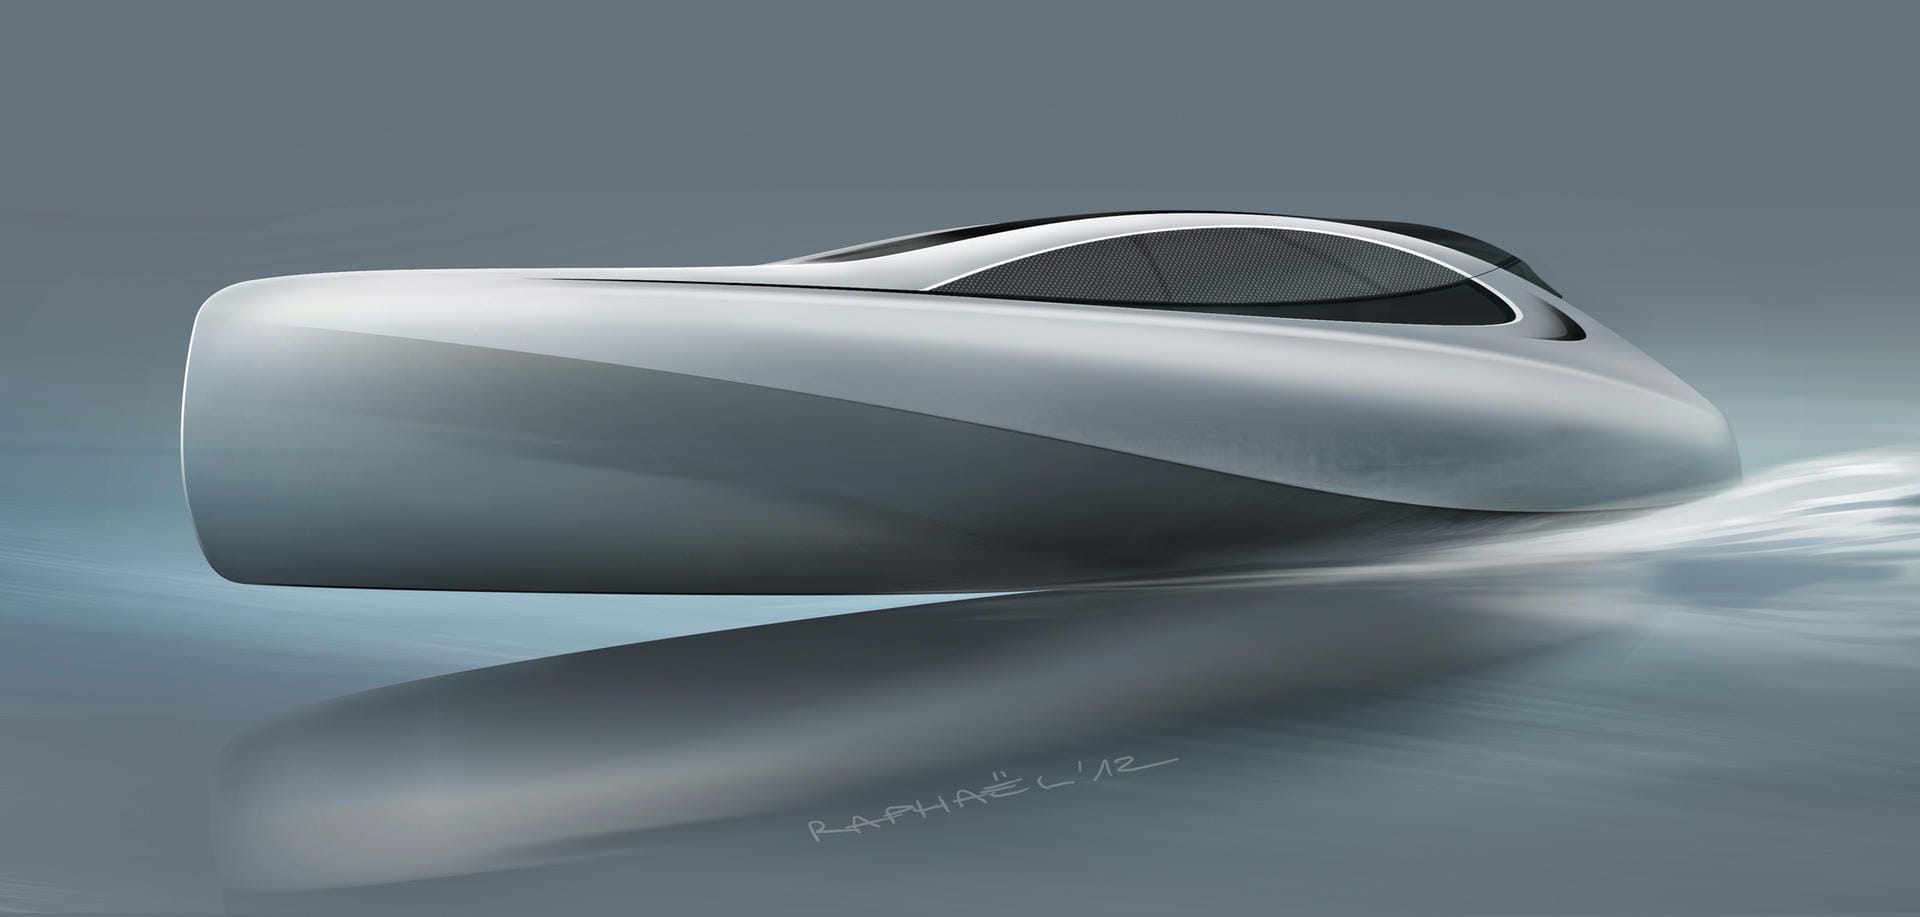 Unabhängig von der Kooperation mit Cigarette Racing entwarfen Mercedes-Benz Style und Silver Arrows Marine bereits 2012 diese 14 Meter lange Jacht, die demnächst fertiggestellt wird.